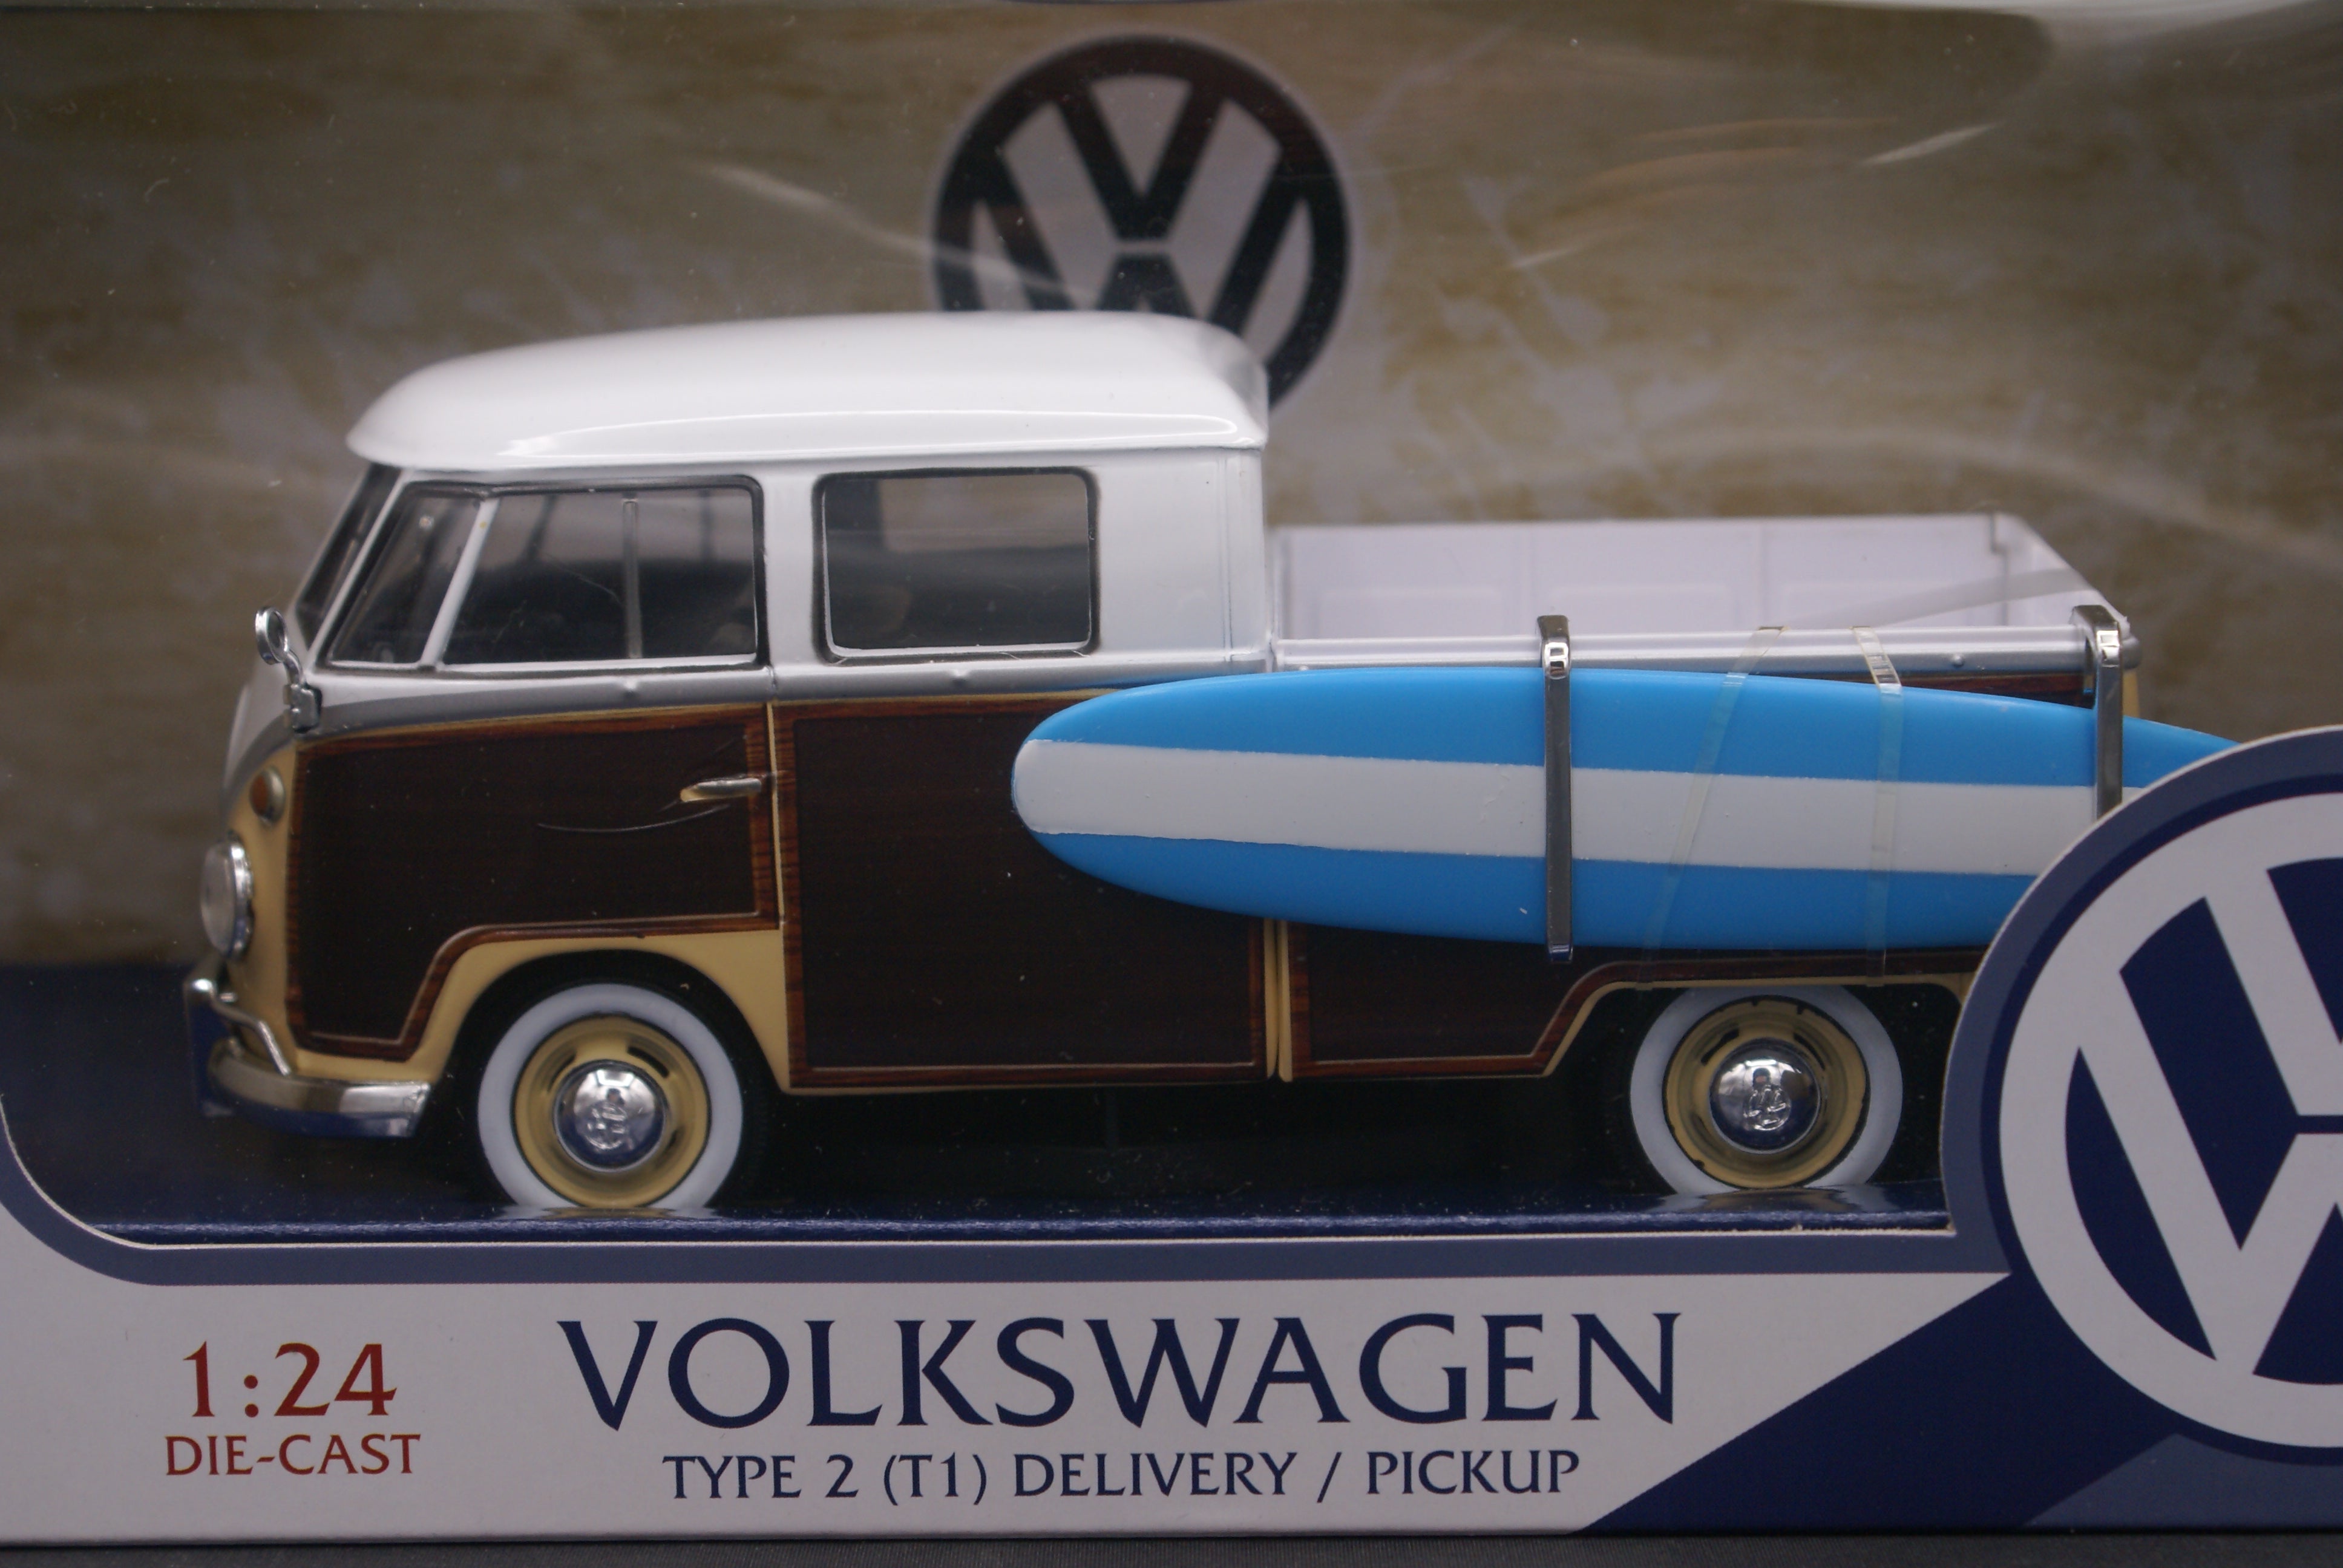 Volkswagen Pickup with Surfboard